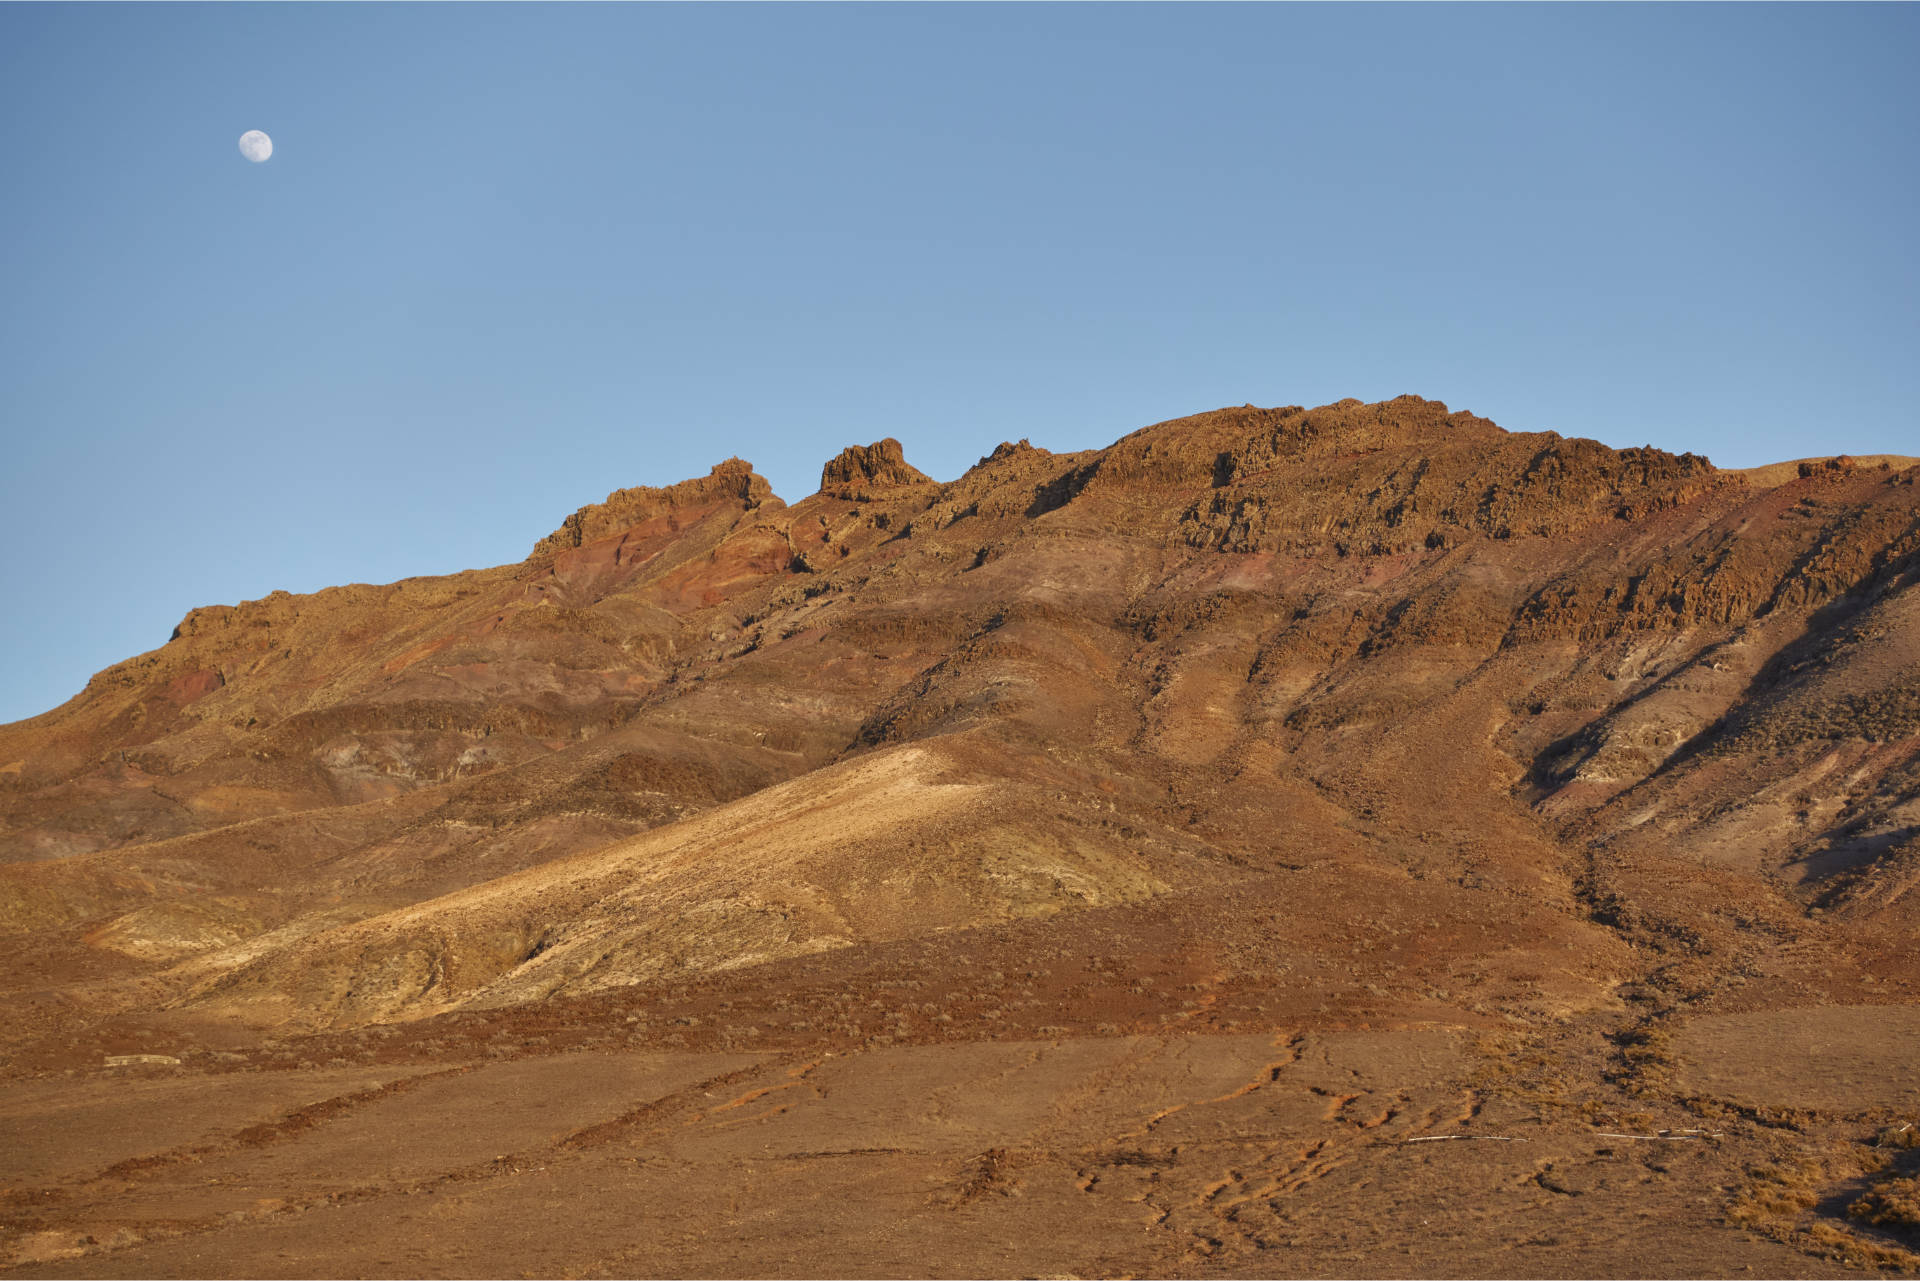 Monumento Natural Montaña Cardón (695 m) Fuerteventura.